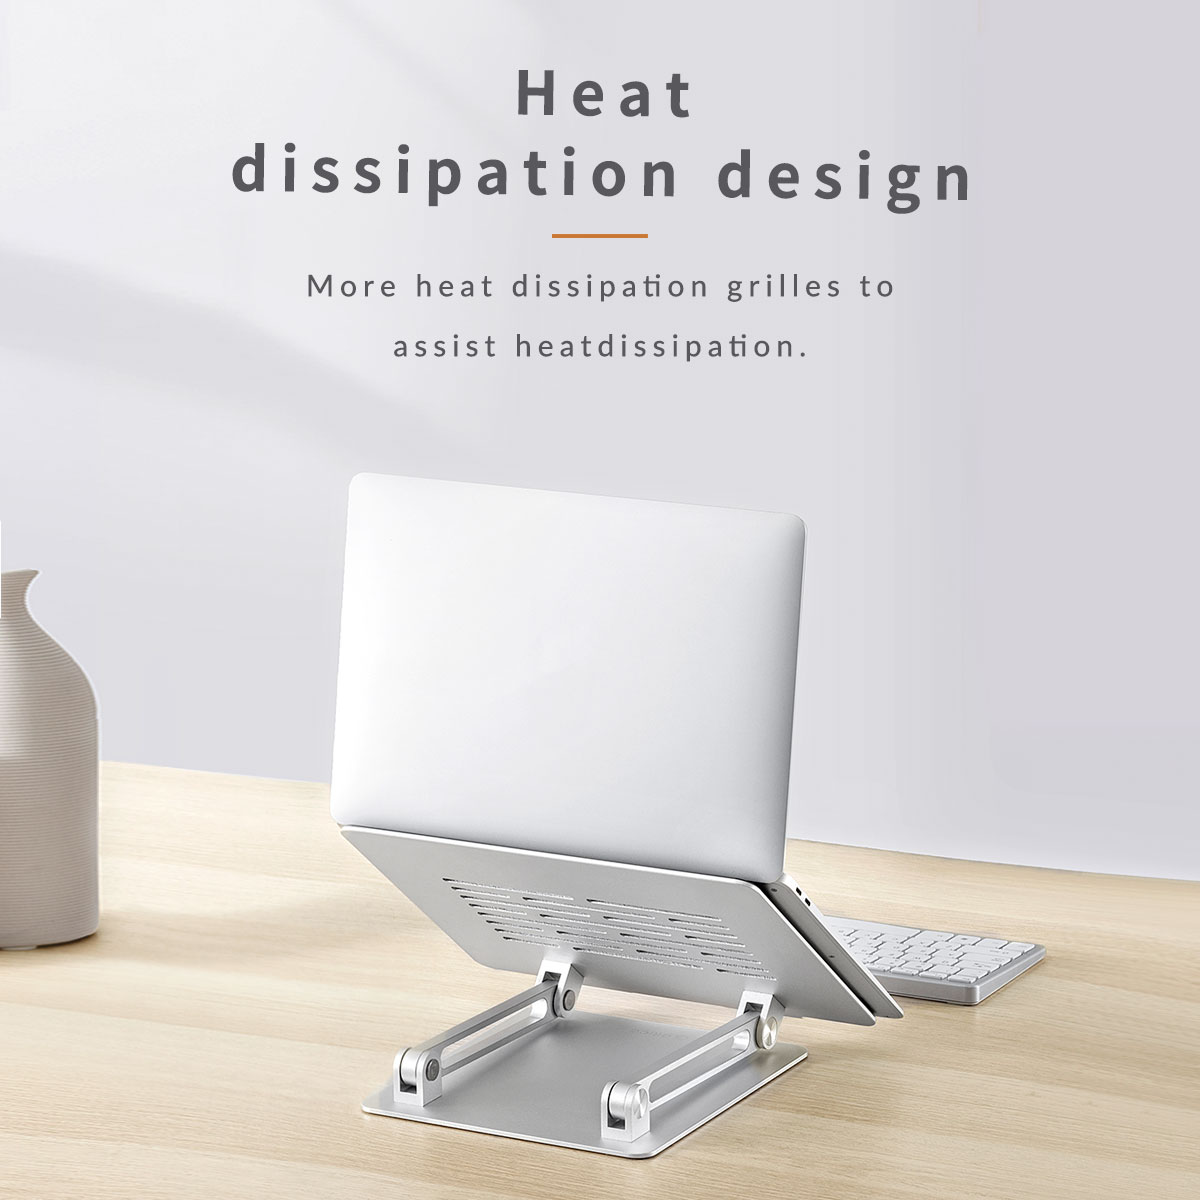 طراحی برای توزیع گرما